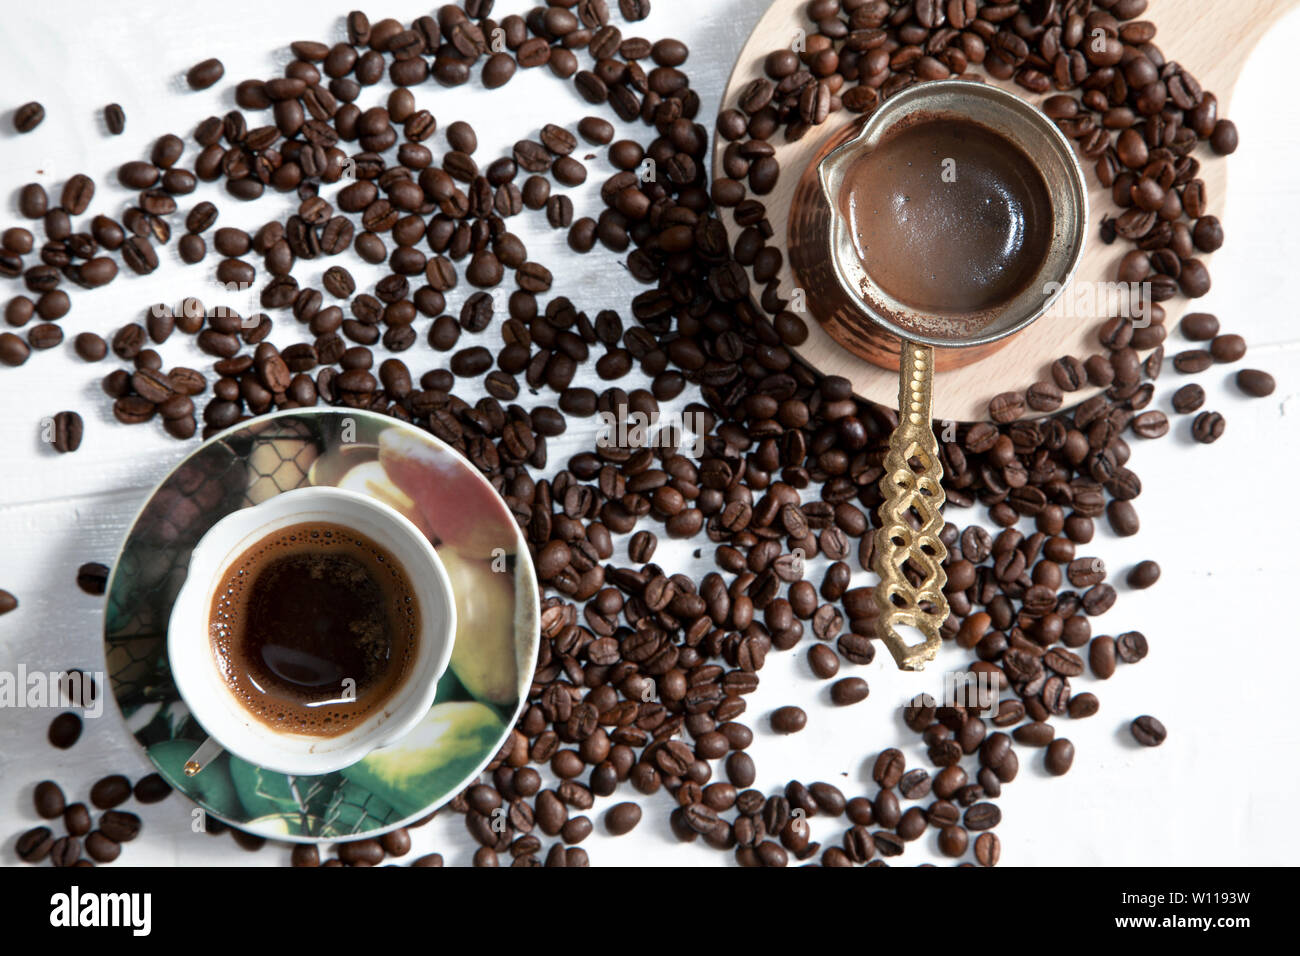 Le café turc et les grains de café sur fond blanc Banque D'Images